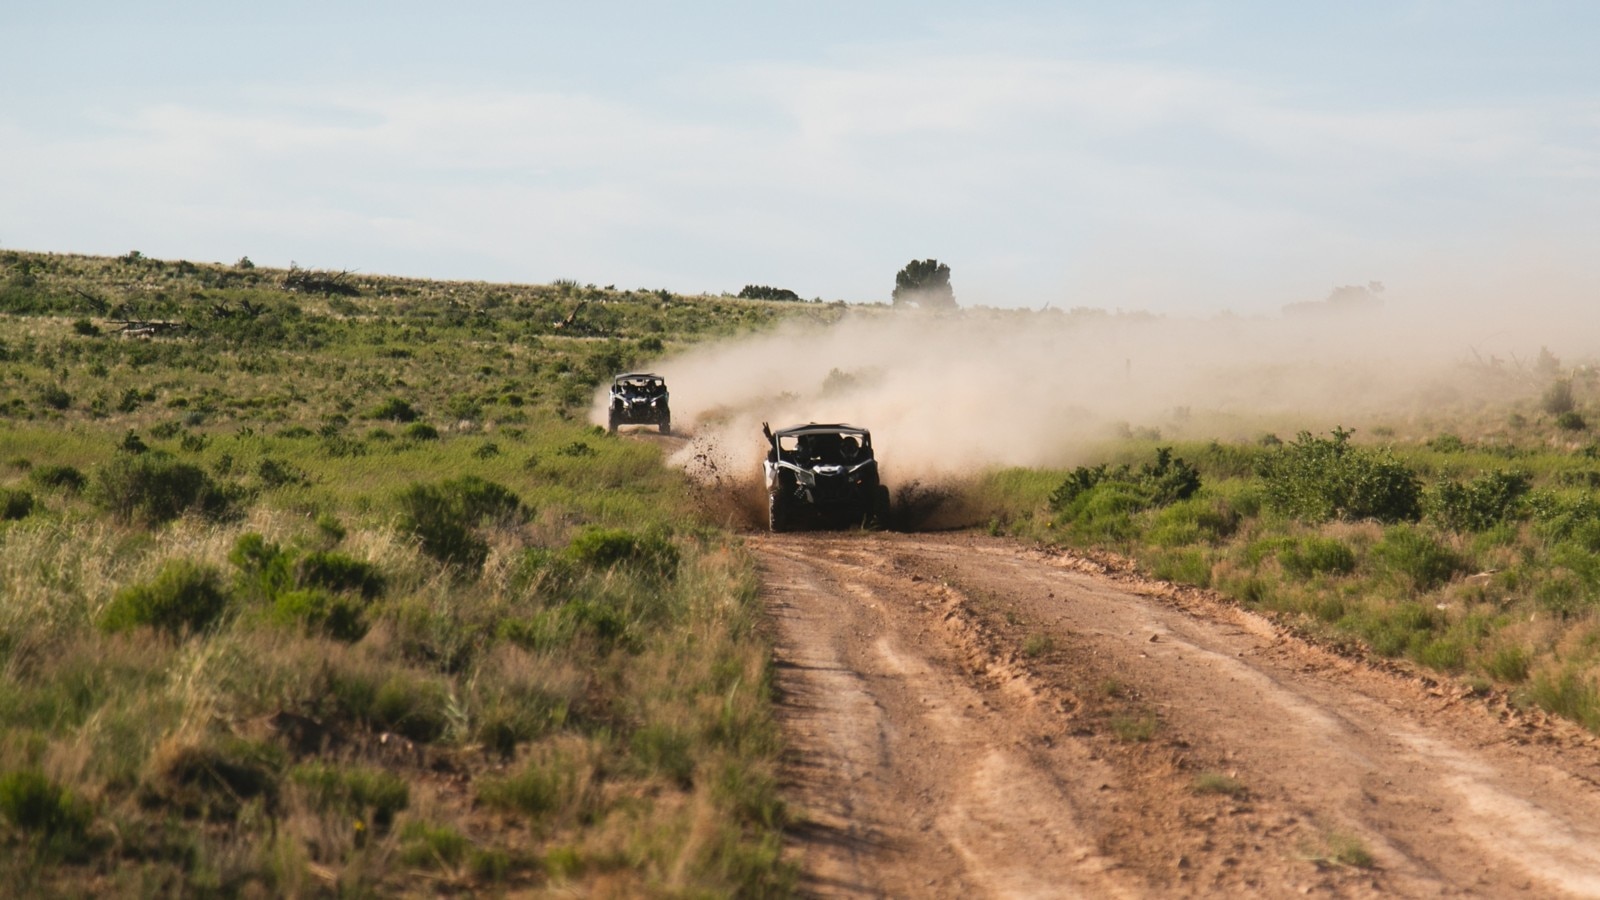 2 véhicules Can-Am Maverick X3 sur une route poussiéreuse